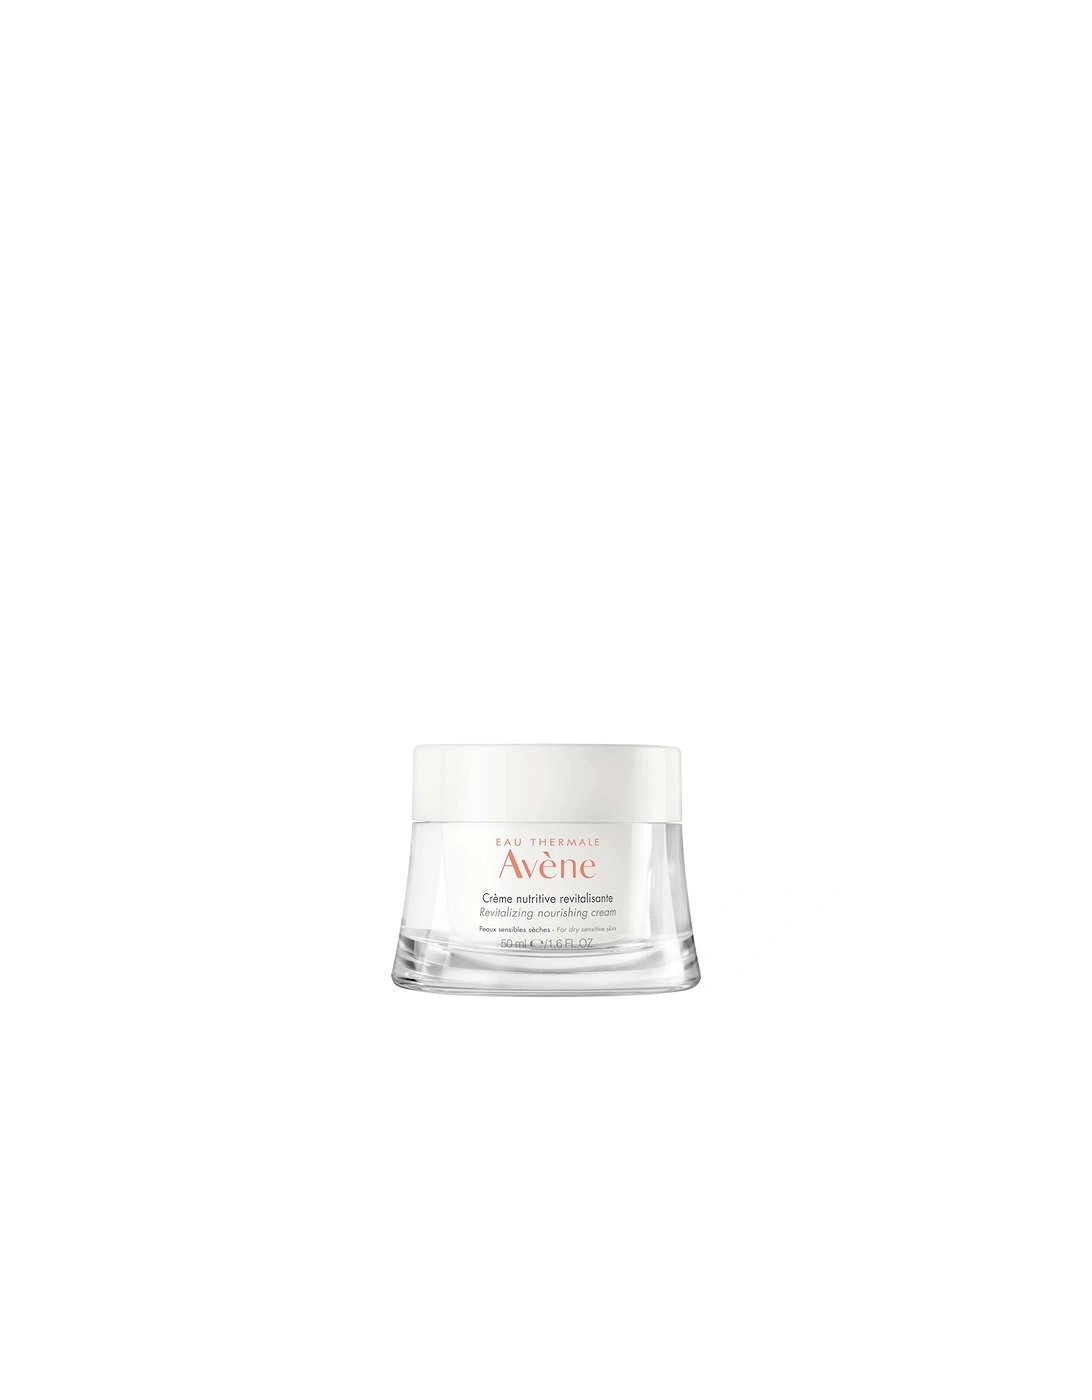 Avène Les Essentiels Revitalizing Nourishing Cream Moisturiser for Dry, Sensitive Skin 50ml - Avene, 2 of 1